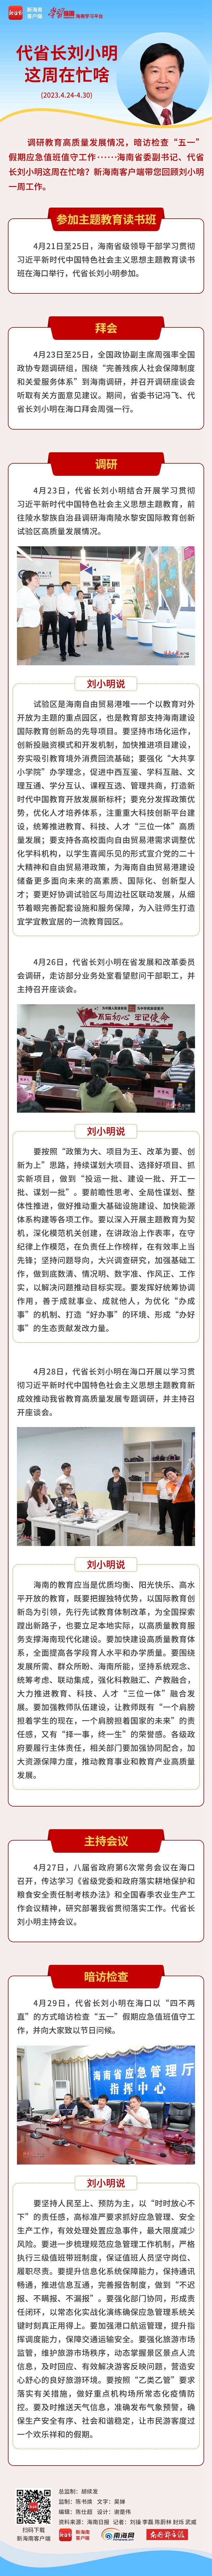 海南政情 | 代省长刘小明这周在忙啥？（4月24日至4月30日）